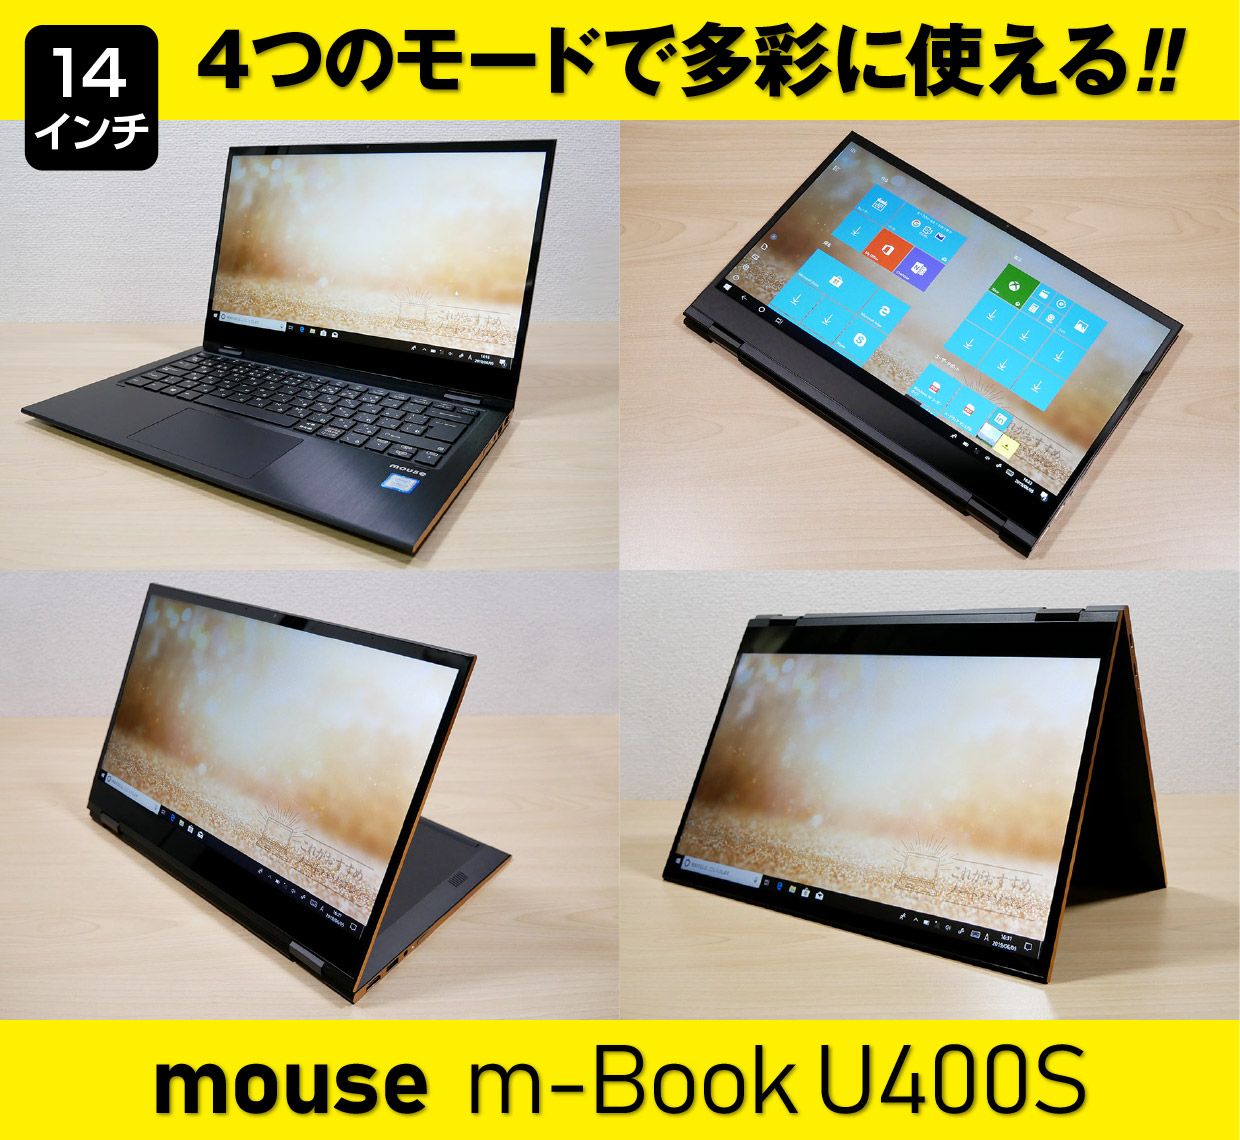 マウスコンピューター m-Book U400Sのメイン画像